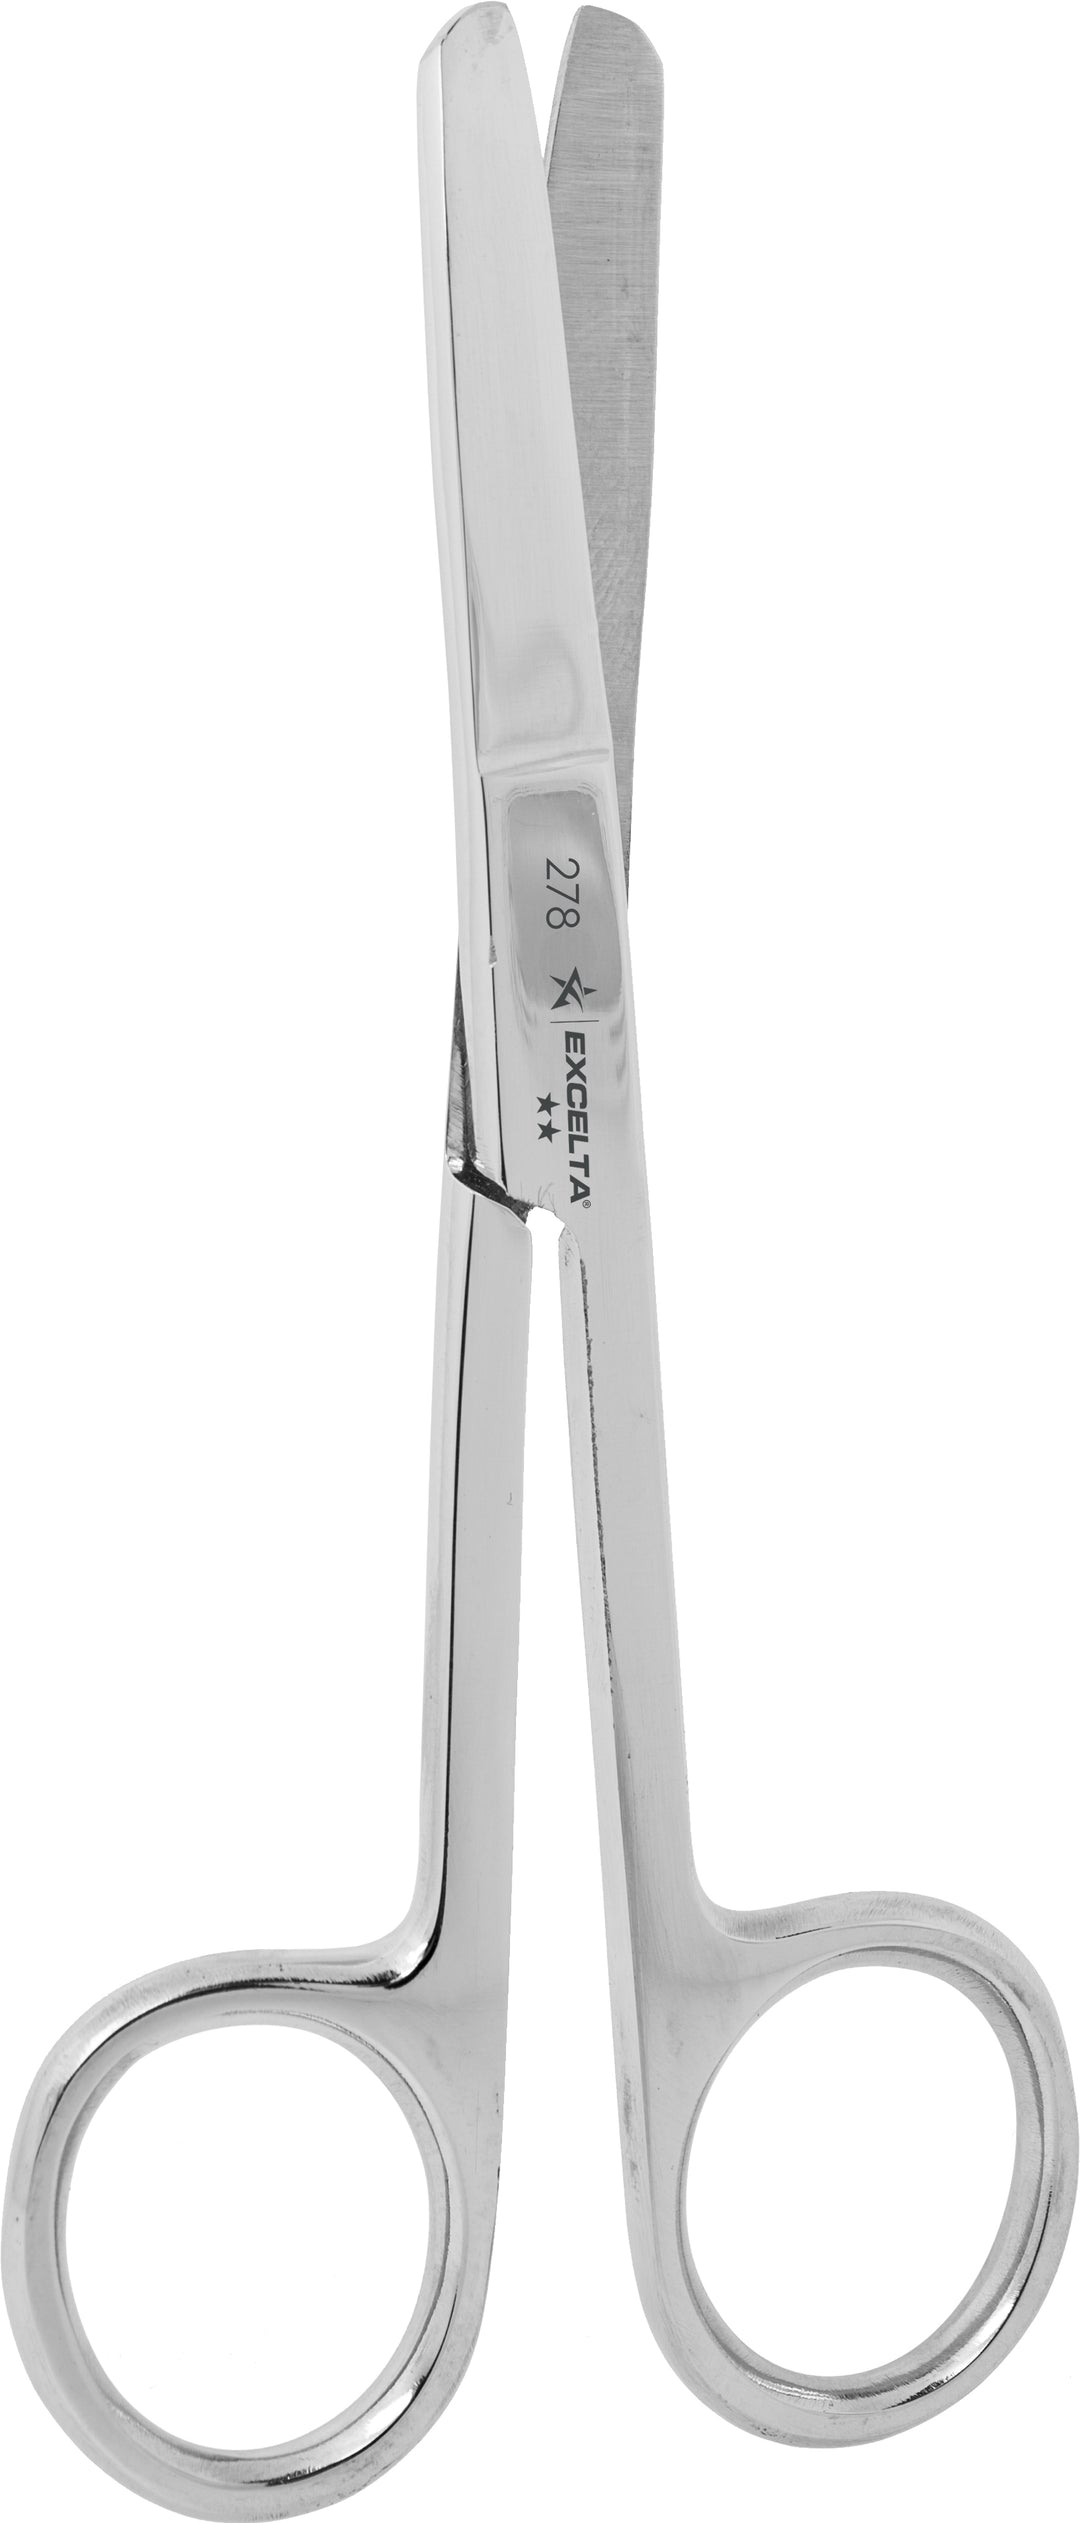 Excelta 278 Scissors - Fine 1.25" Blade - SS - Oal 4.5" - Round Blunt Blades